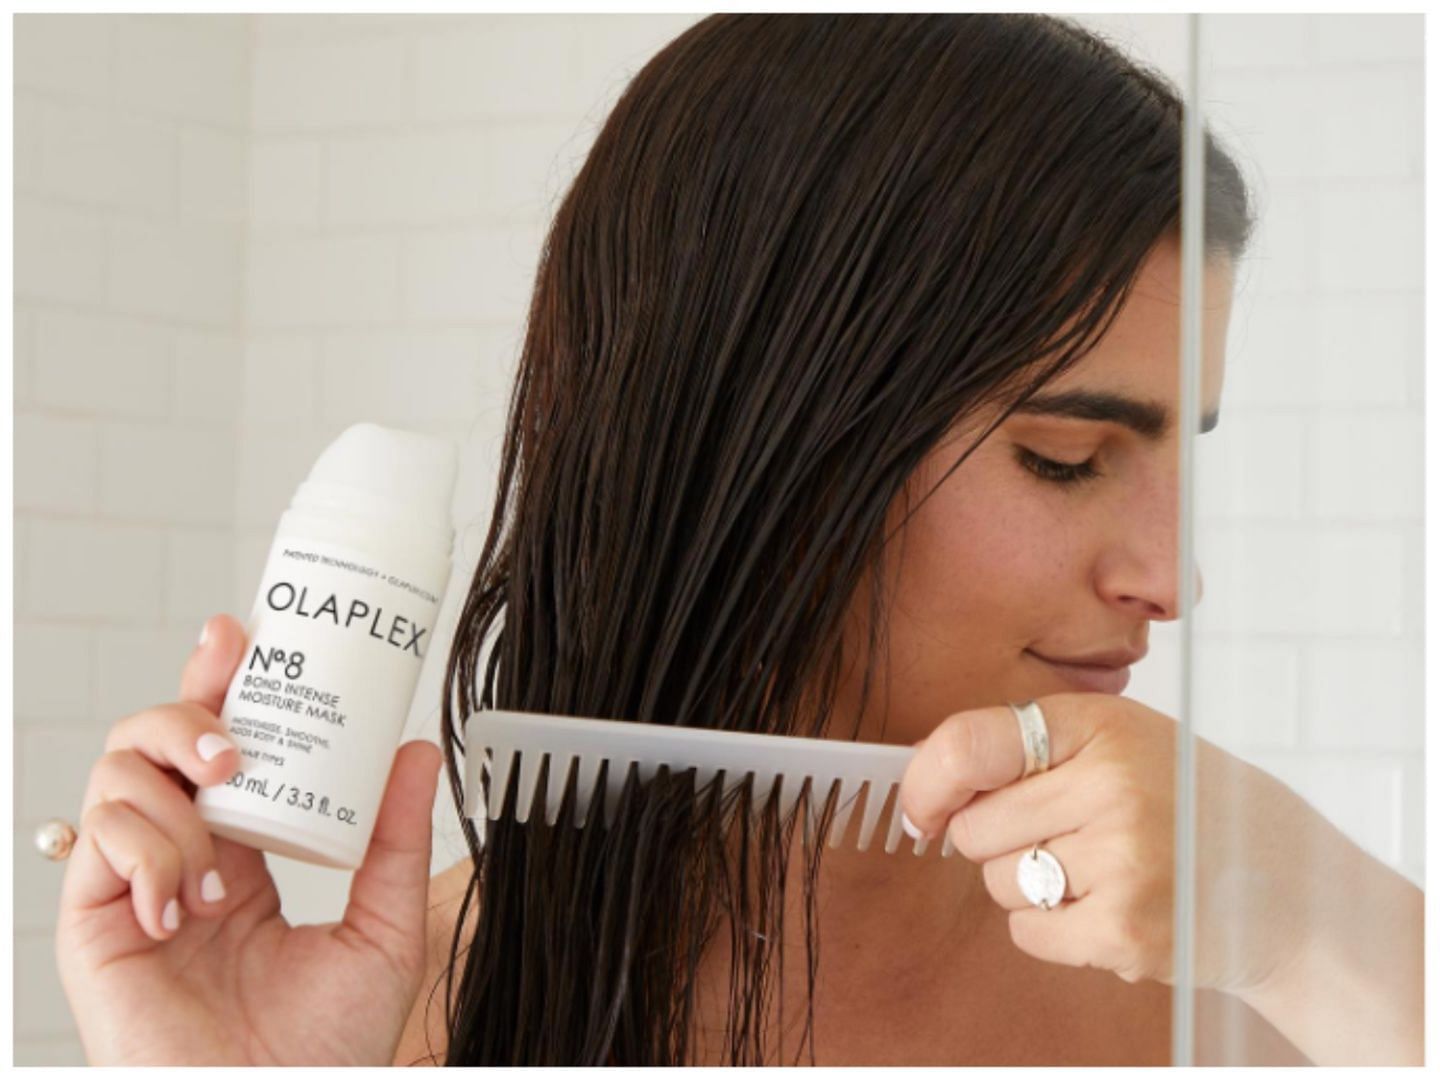 Is Olaplex good for your hair? (Image via IG @olaplex)